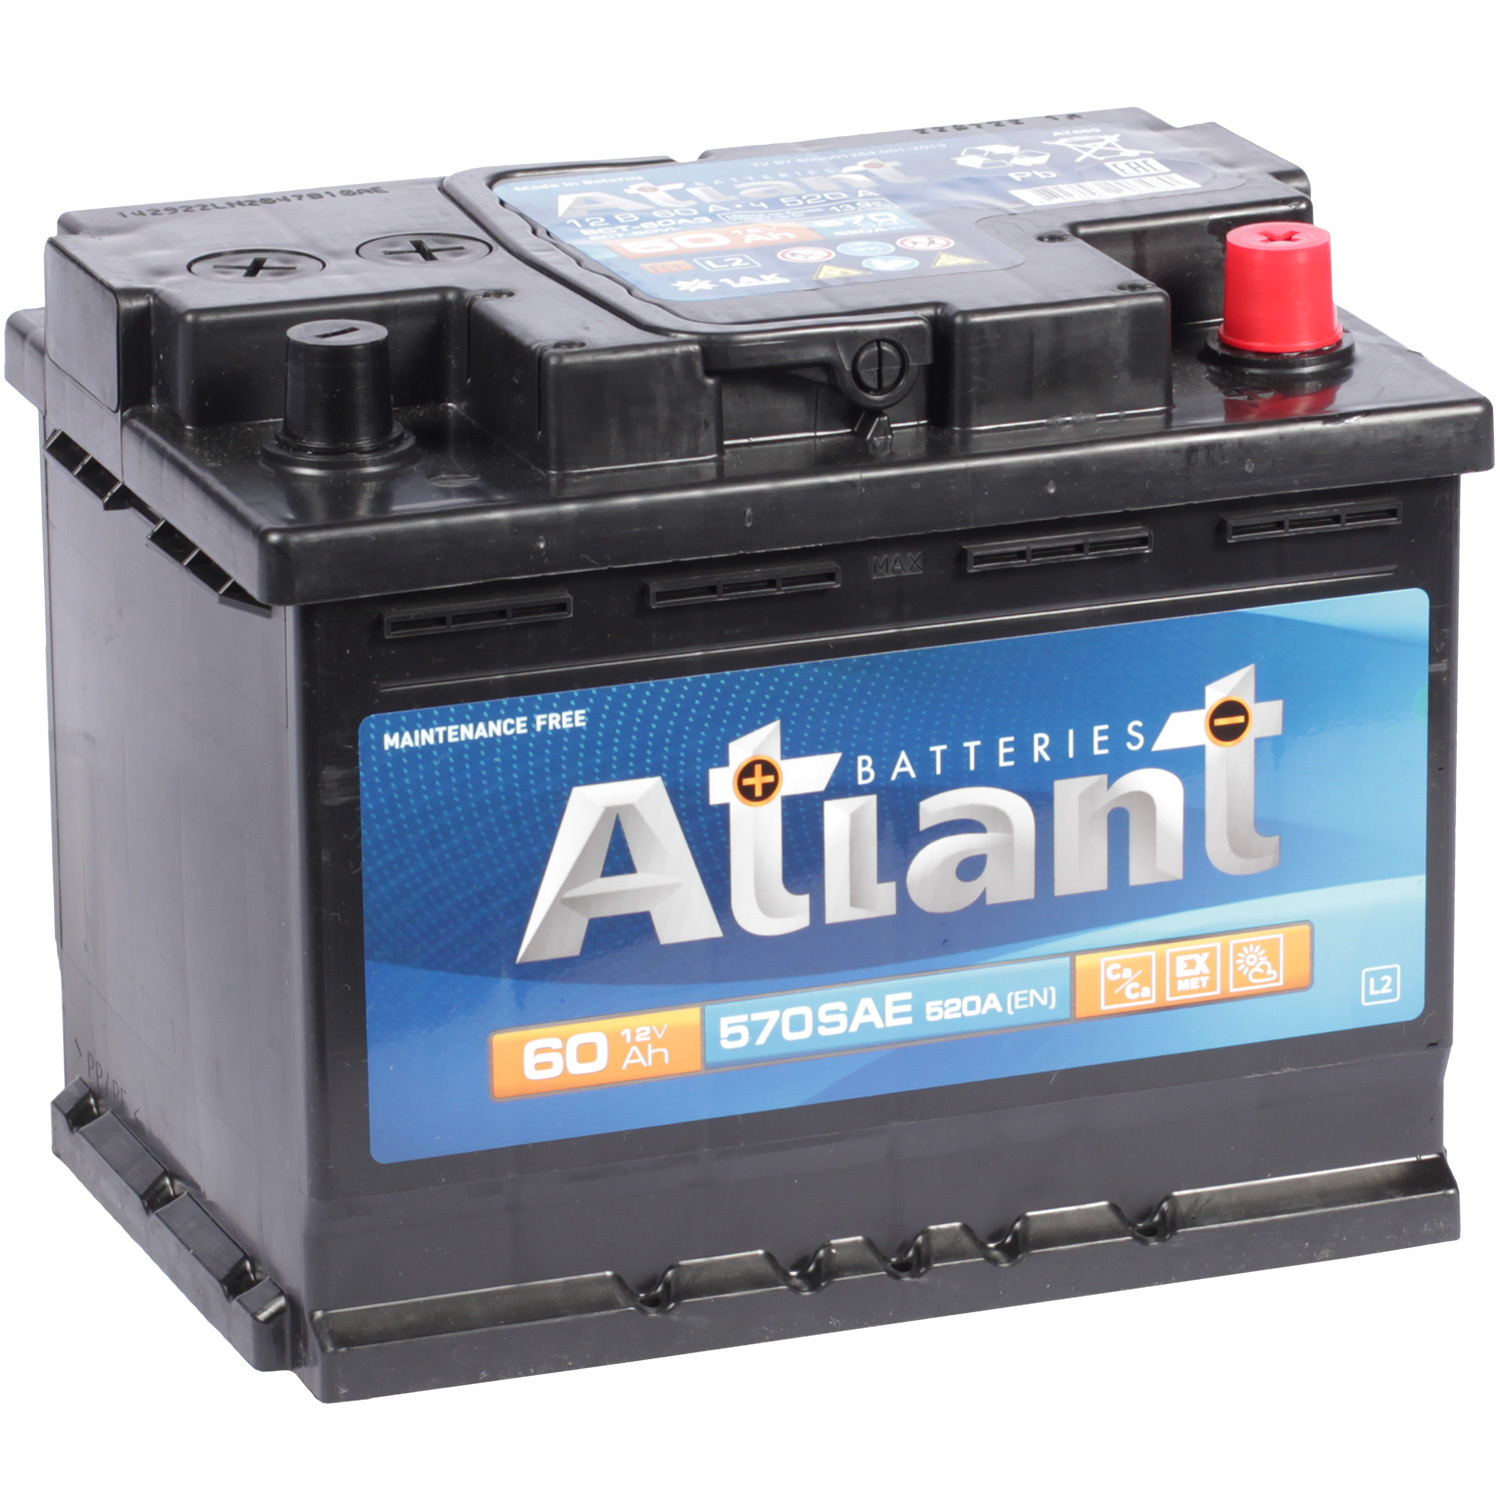 atlant автомобильный аккумулятор atlant 60 ач прямая полярность l2 Atlant Автомобильный аккумулятор Atlant 60 Ач обратная полярность L2